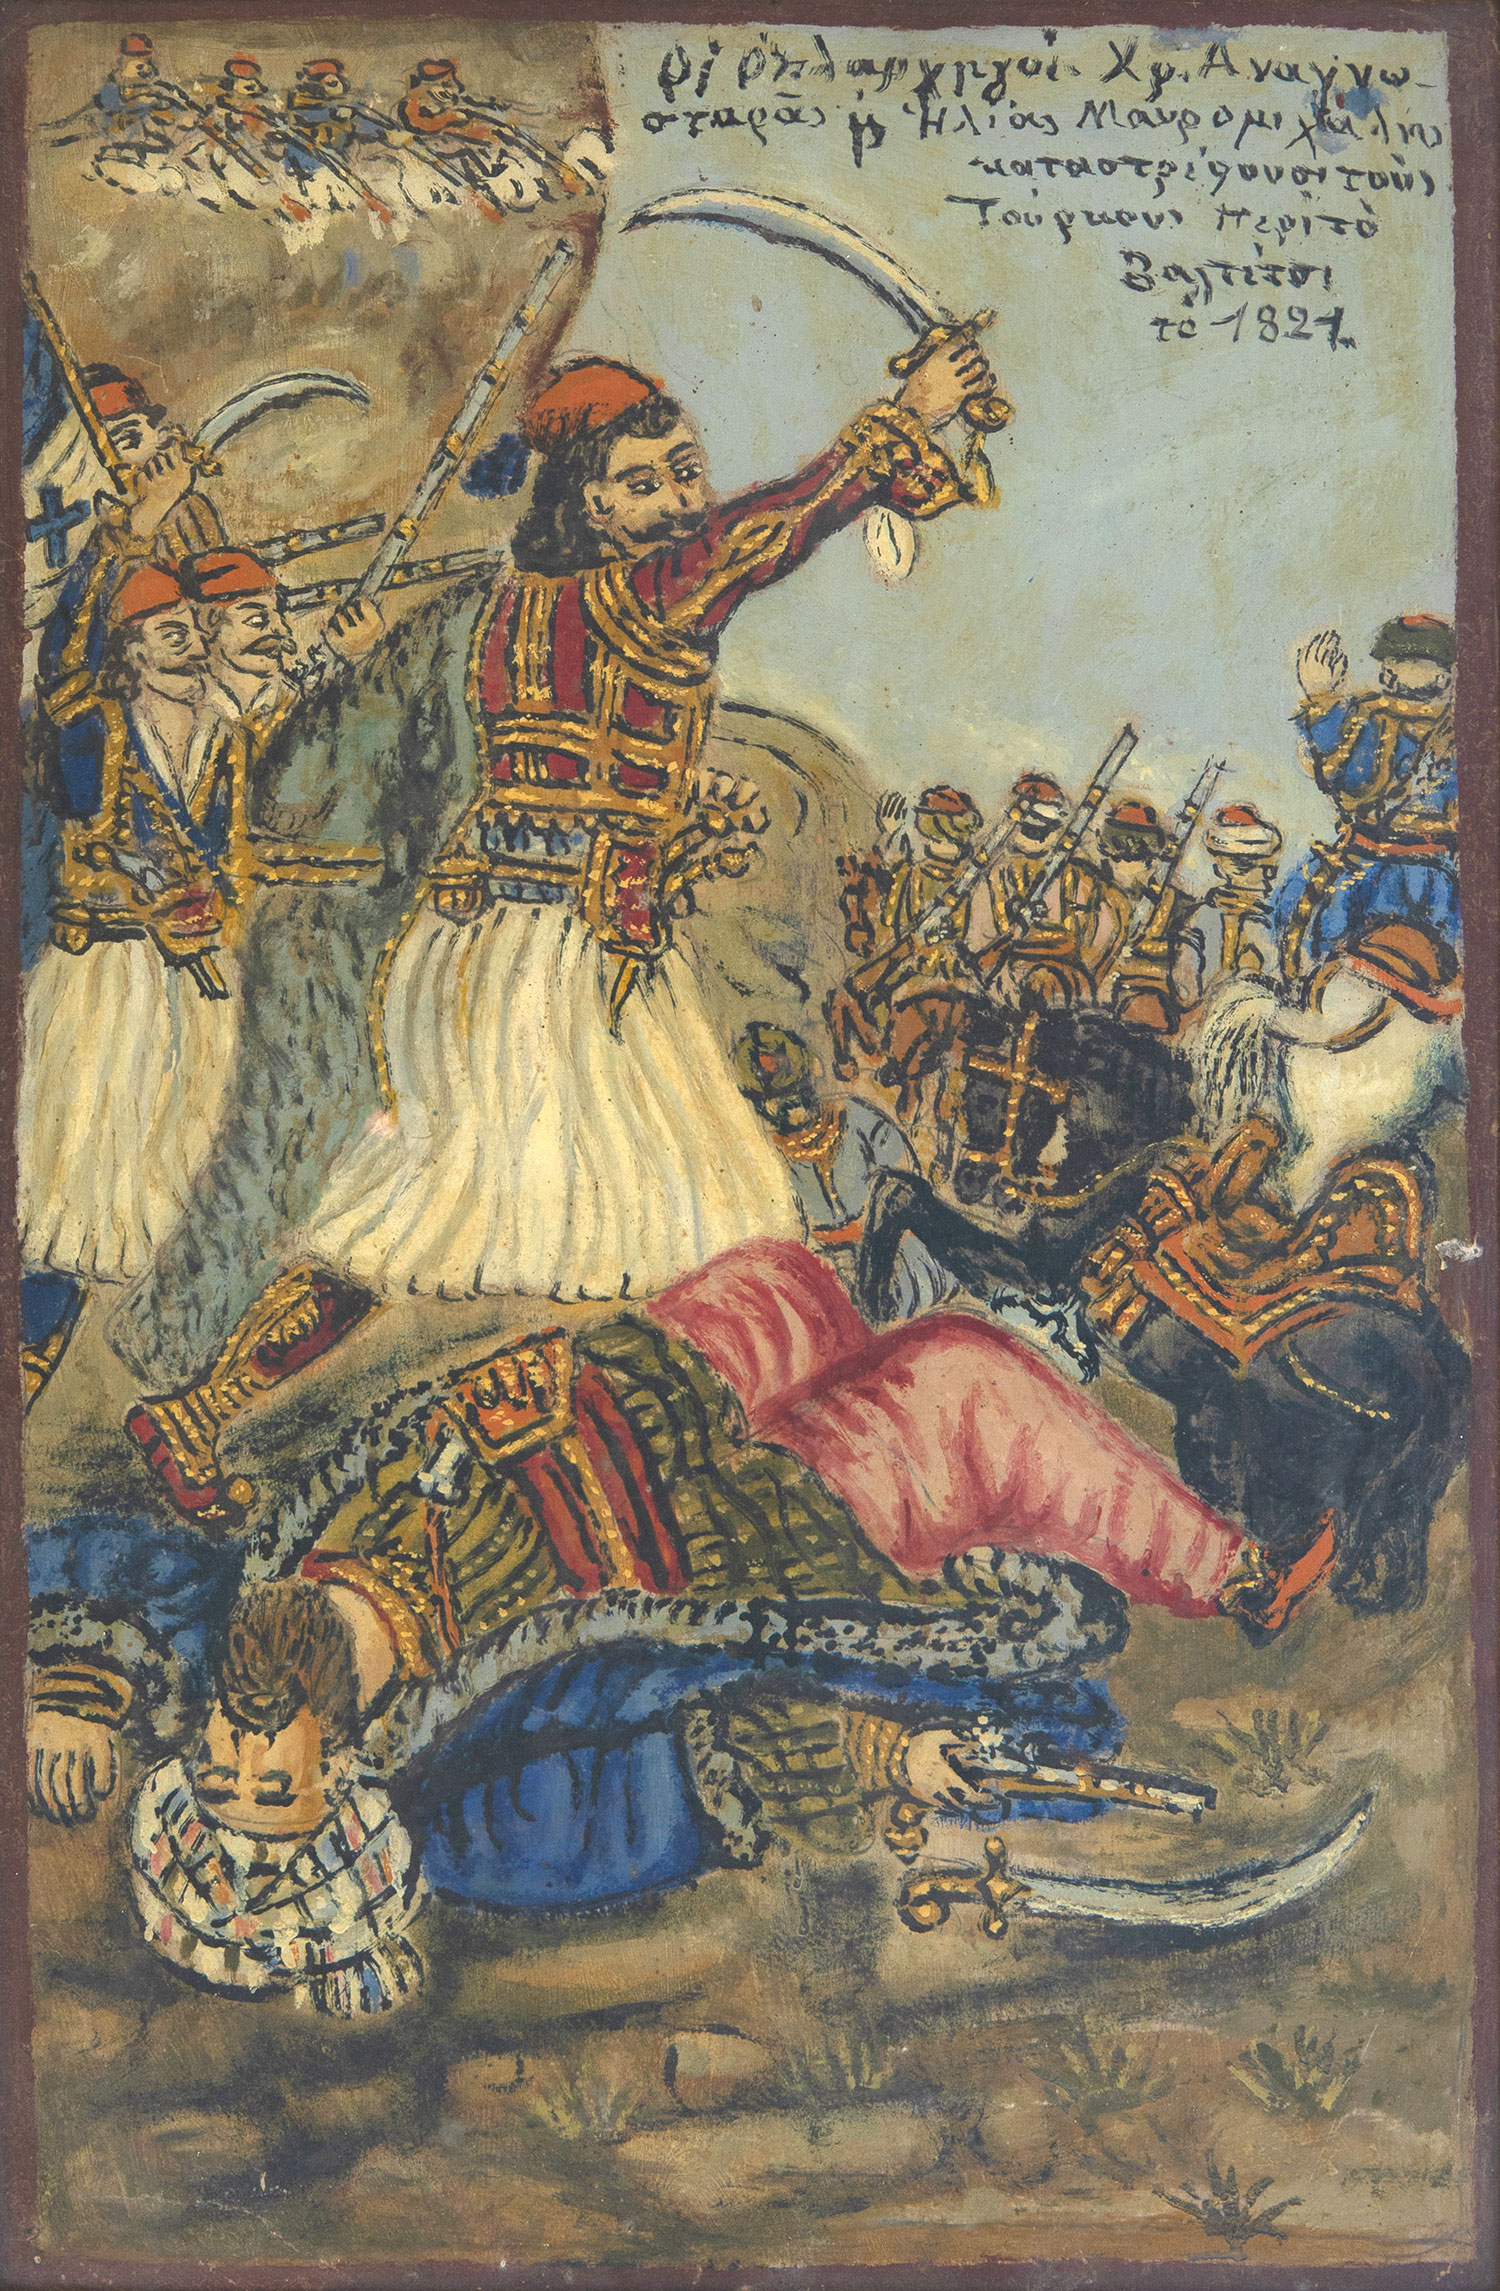 Οι οπλαρχηγοί Χρ. Αναγνωσταράς και Ηλίας Μαυρομιχάλης καταστρέφουν τους Τούρκους περί το Βαλτέτσι το 1821